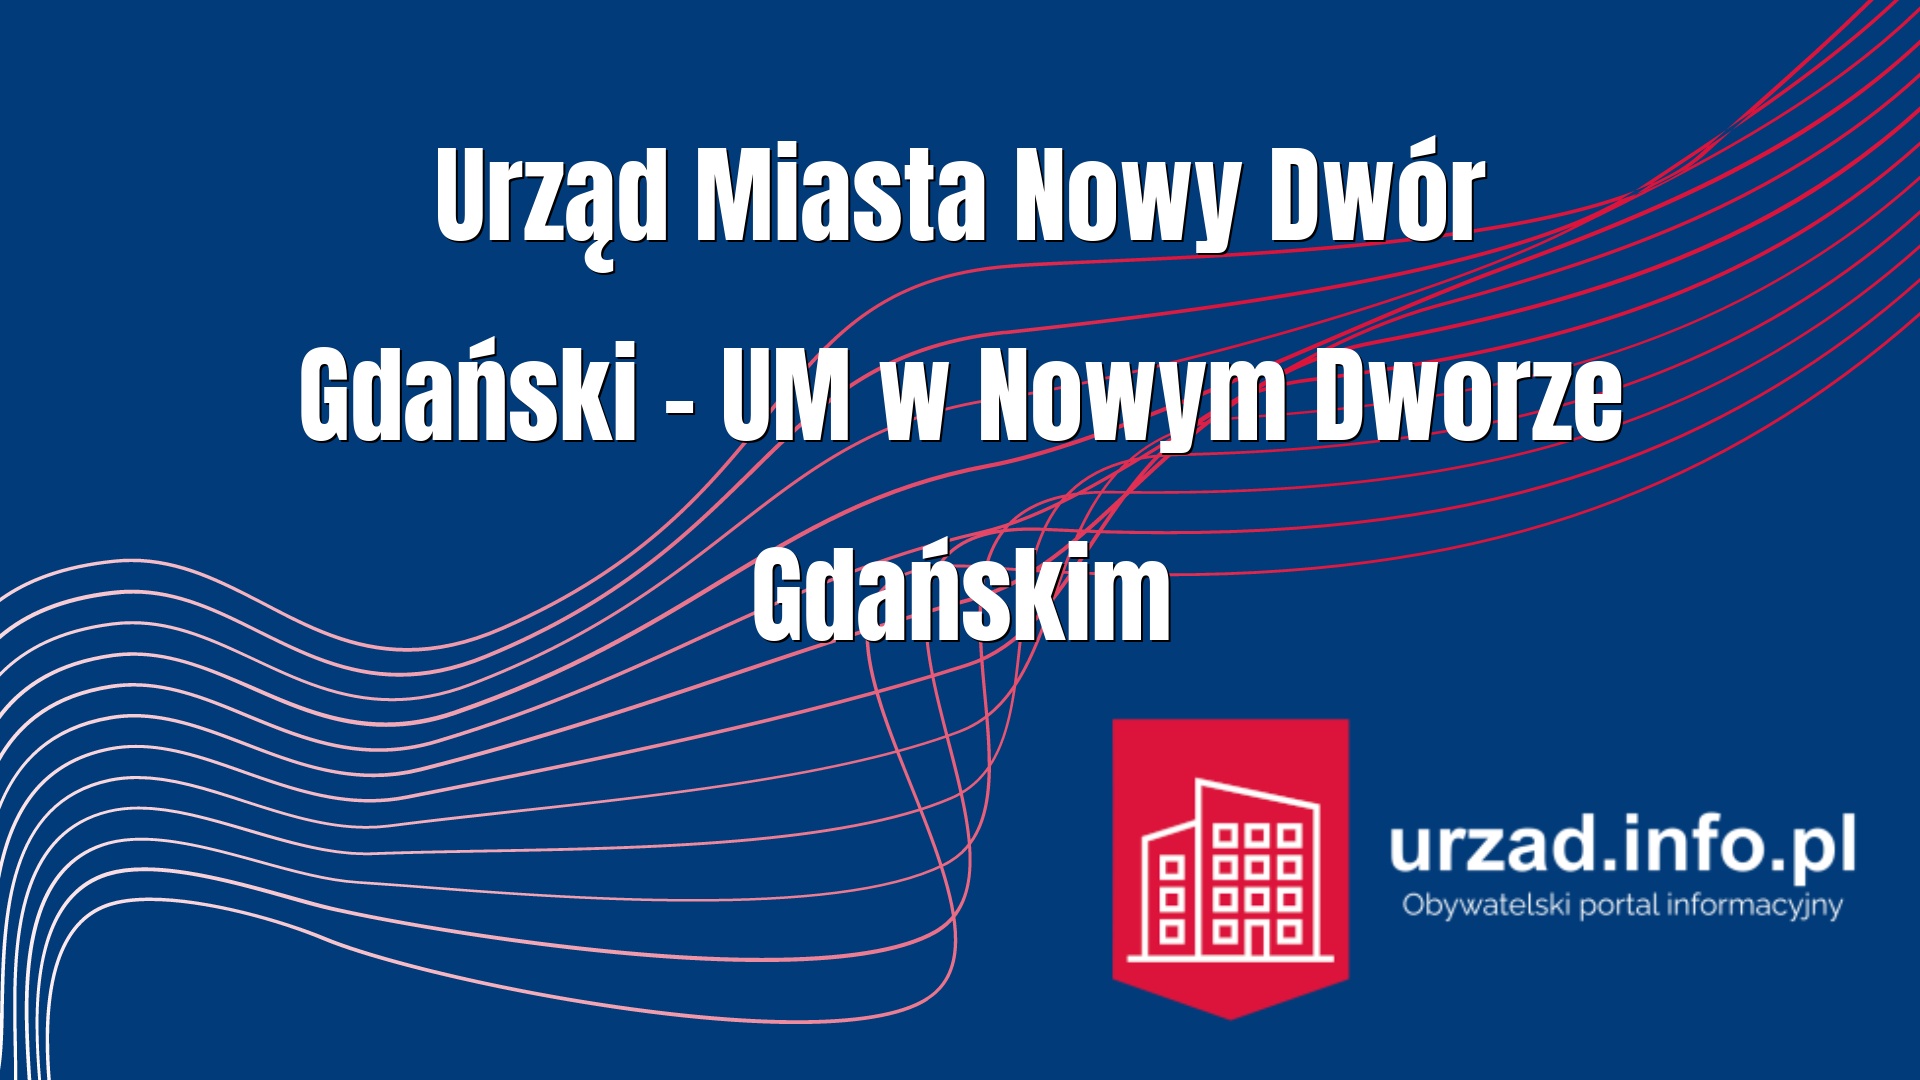 Urząd Miasta Nowy Dwór Gdański – UM w Nowym Dworze Gdańskim